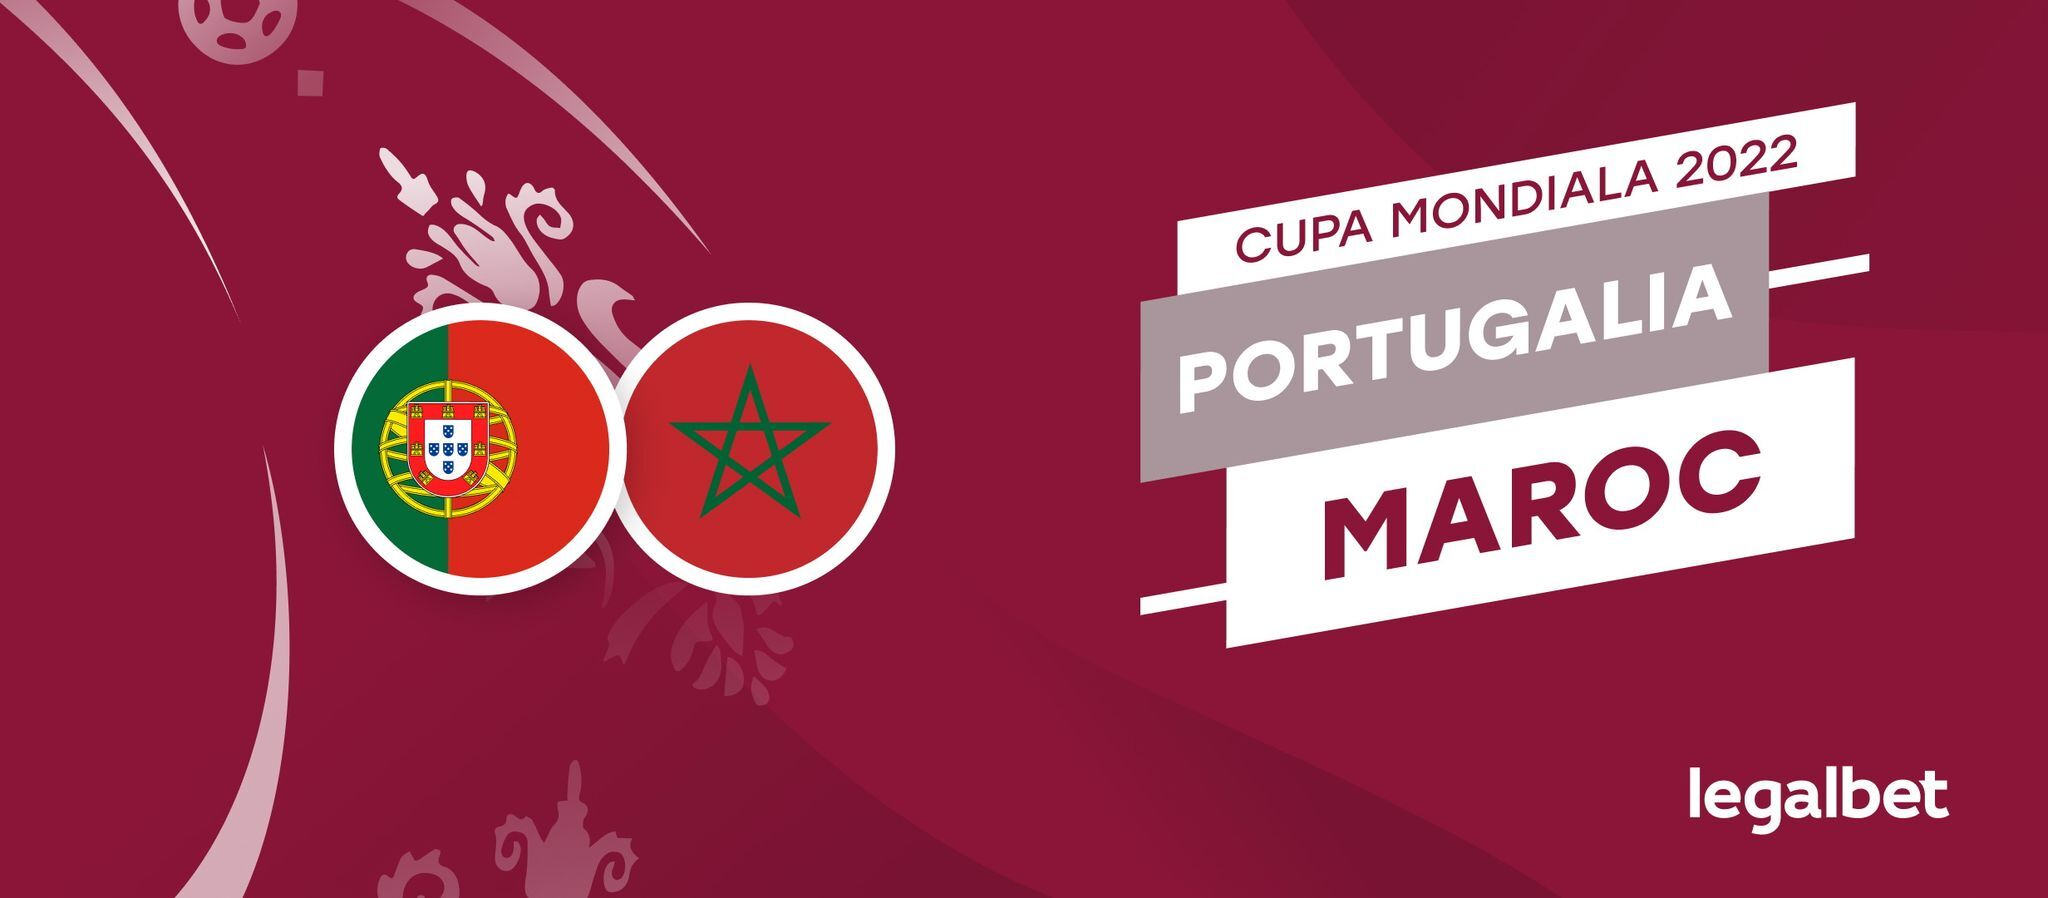 Maroc - Portugalia  Cote la pariuri, ponturi si informatii